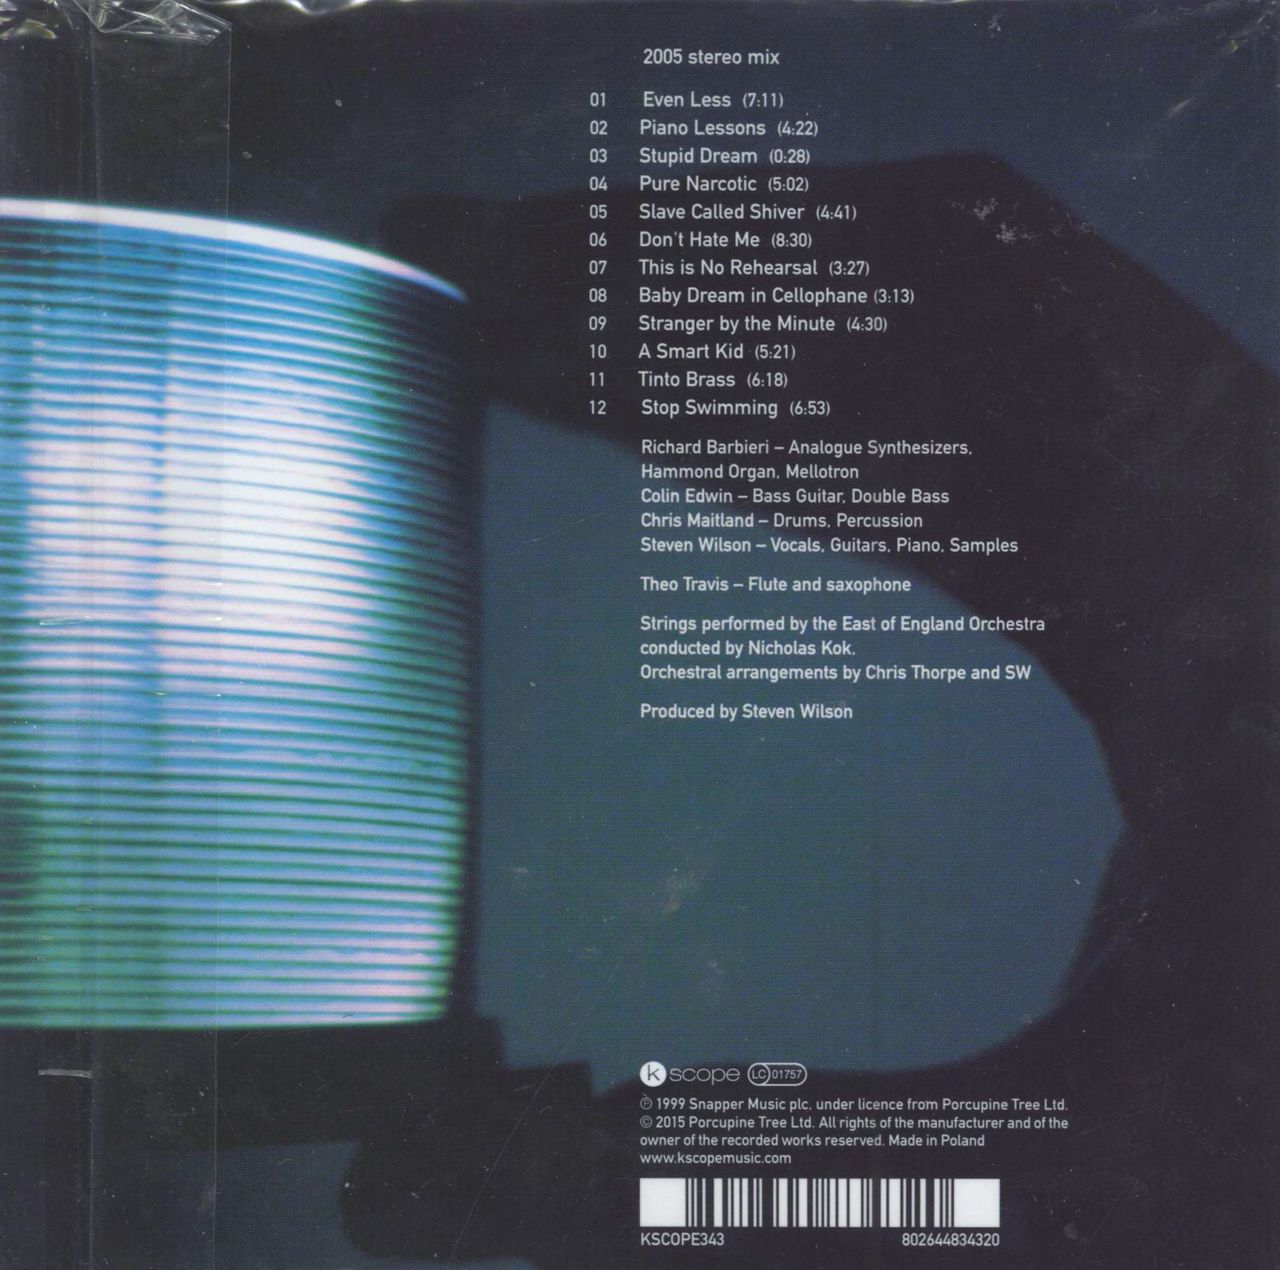 Porcupine Tree Stupid Dream UK CD album — RareVinyl.com